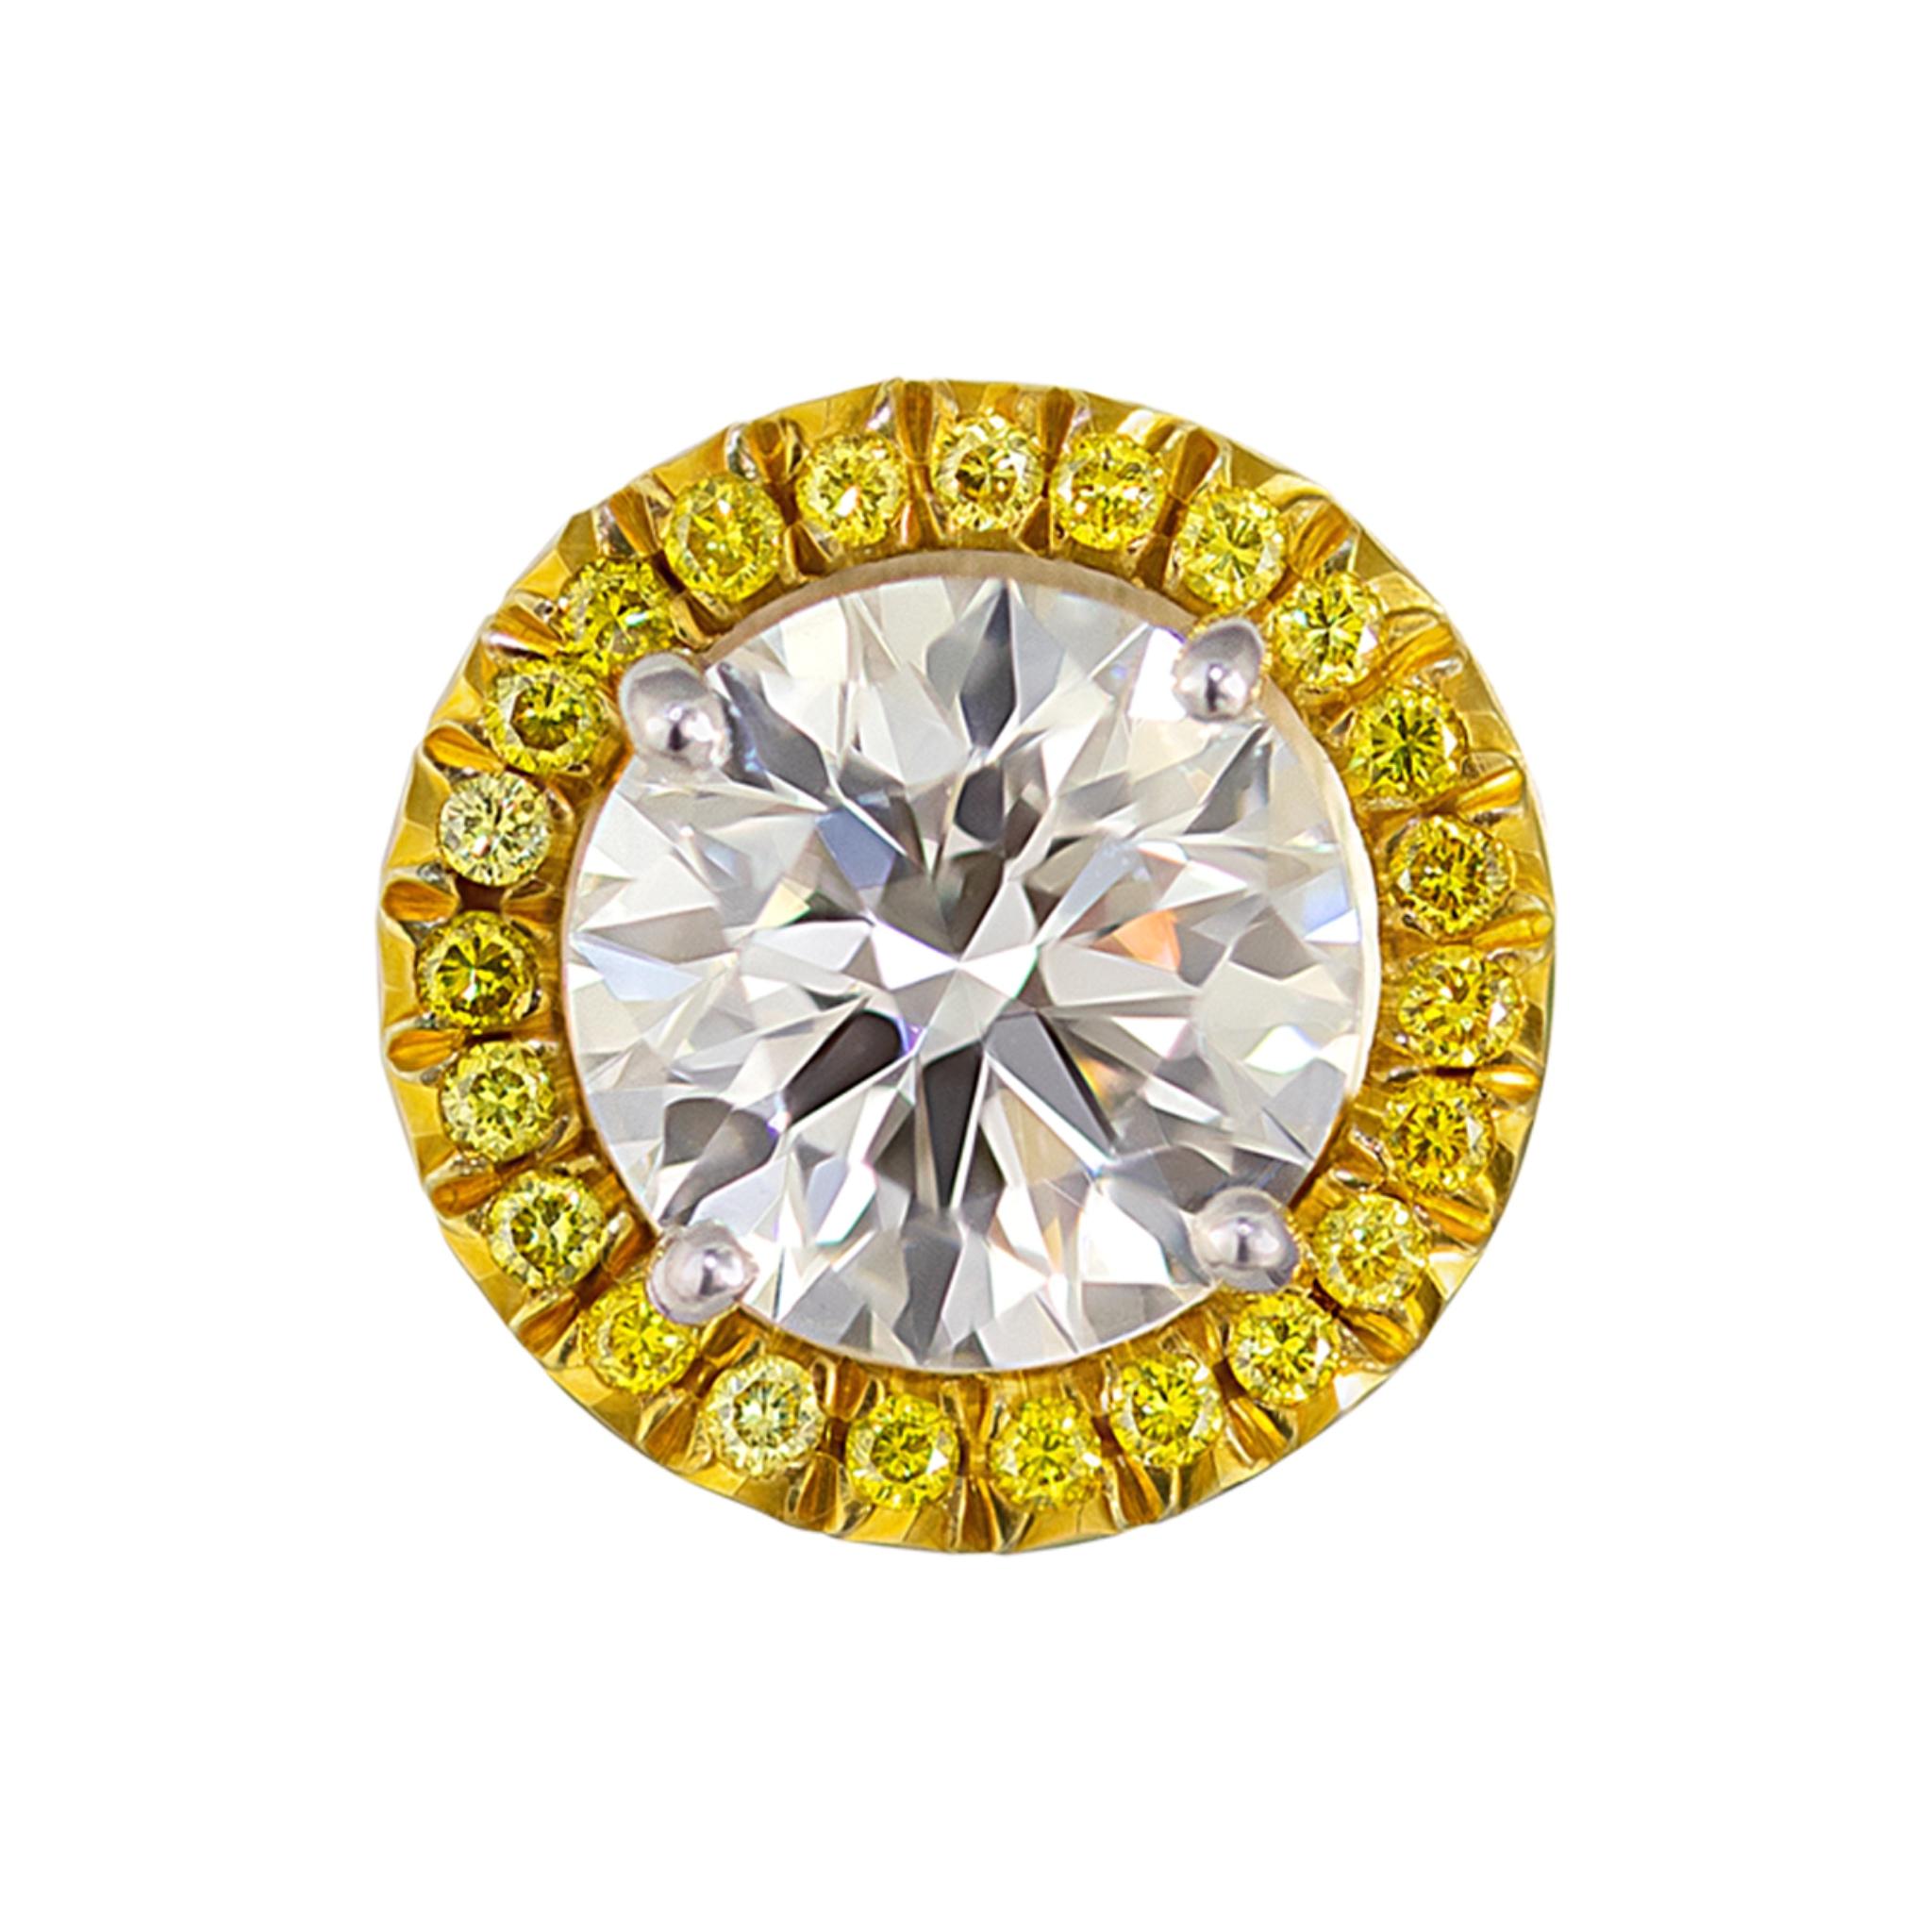 Graff Boucles d'oreilles à clip en or jaune 18 carats avec diamants
2 diamants GIA : 2.05ct & 2.01ct
Diamant de 2,05ct Rapport GIA : 15126487
Diamant de 2,01ct Rapport GIA : 15126458
Couleur E, clarté VS1
Diamants jaunes : 0.32ctw
SKU :